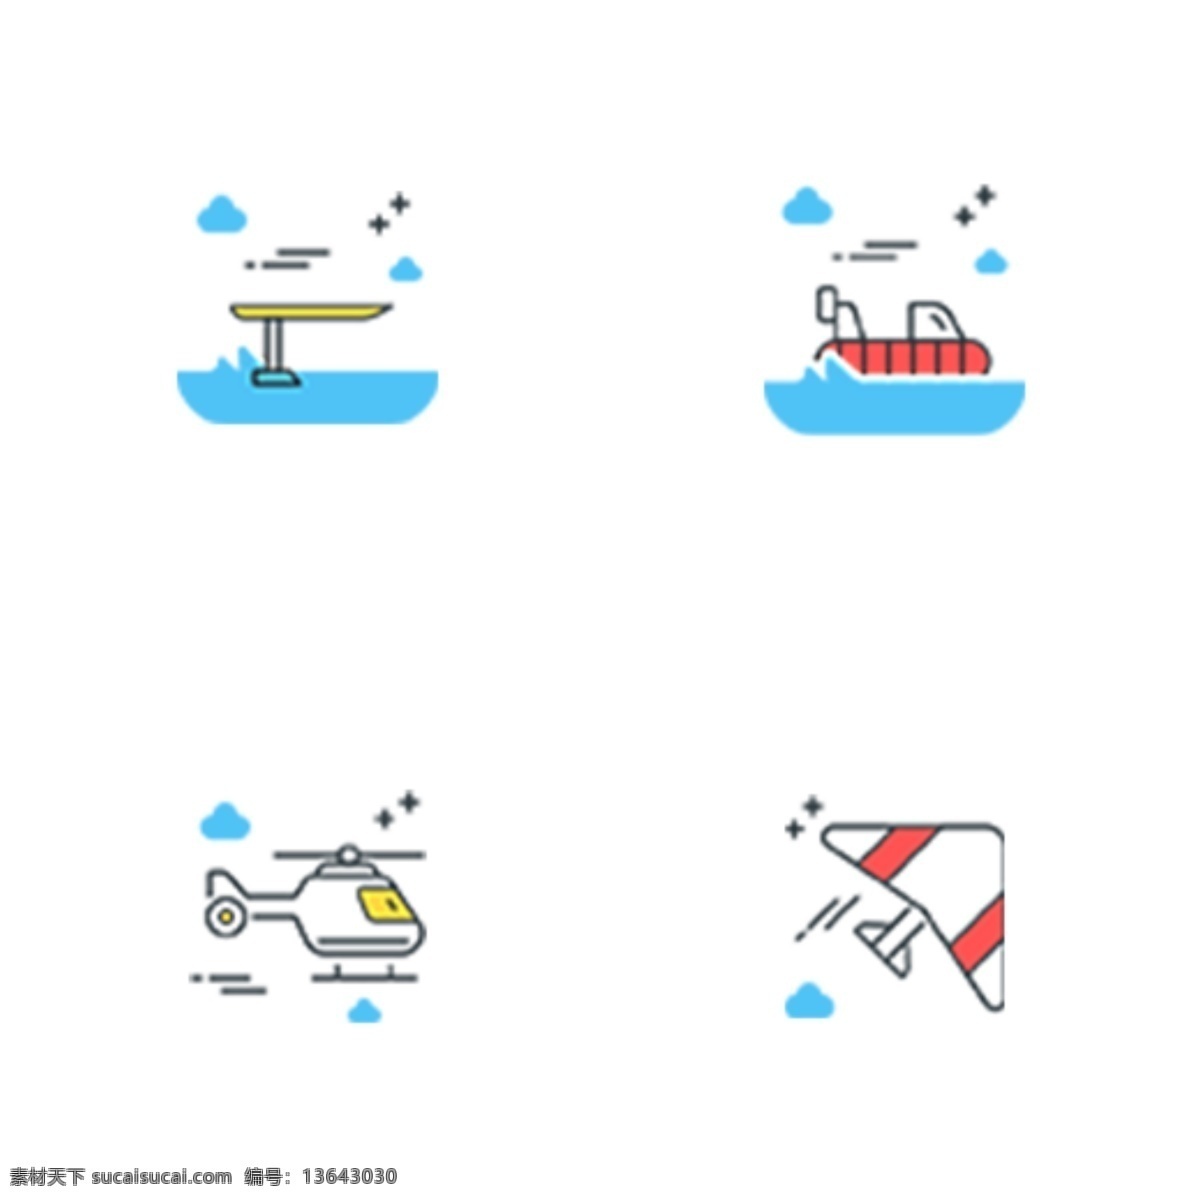 彩色 创意 交通工具 图标 元素 水上交通工具 卡通插画 ui 扁平化 直升飞机 飞机